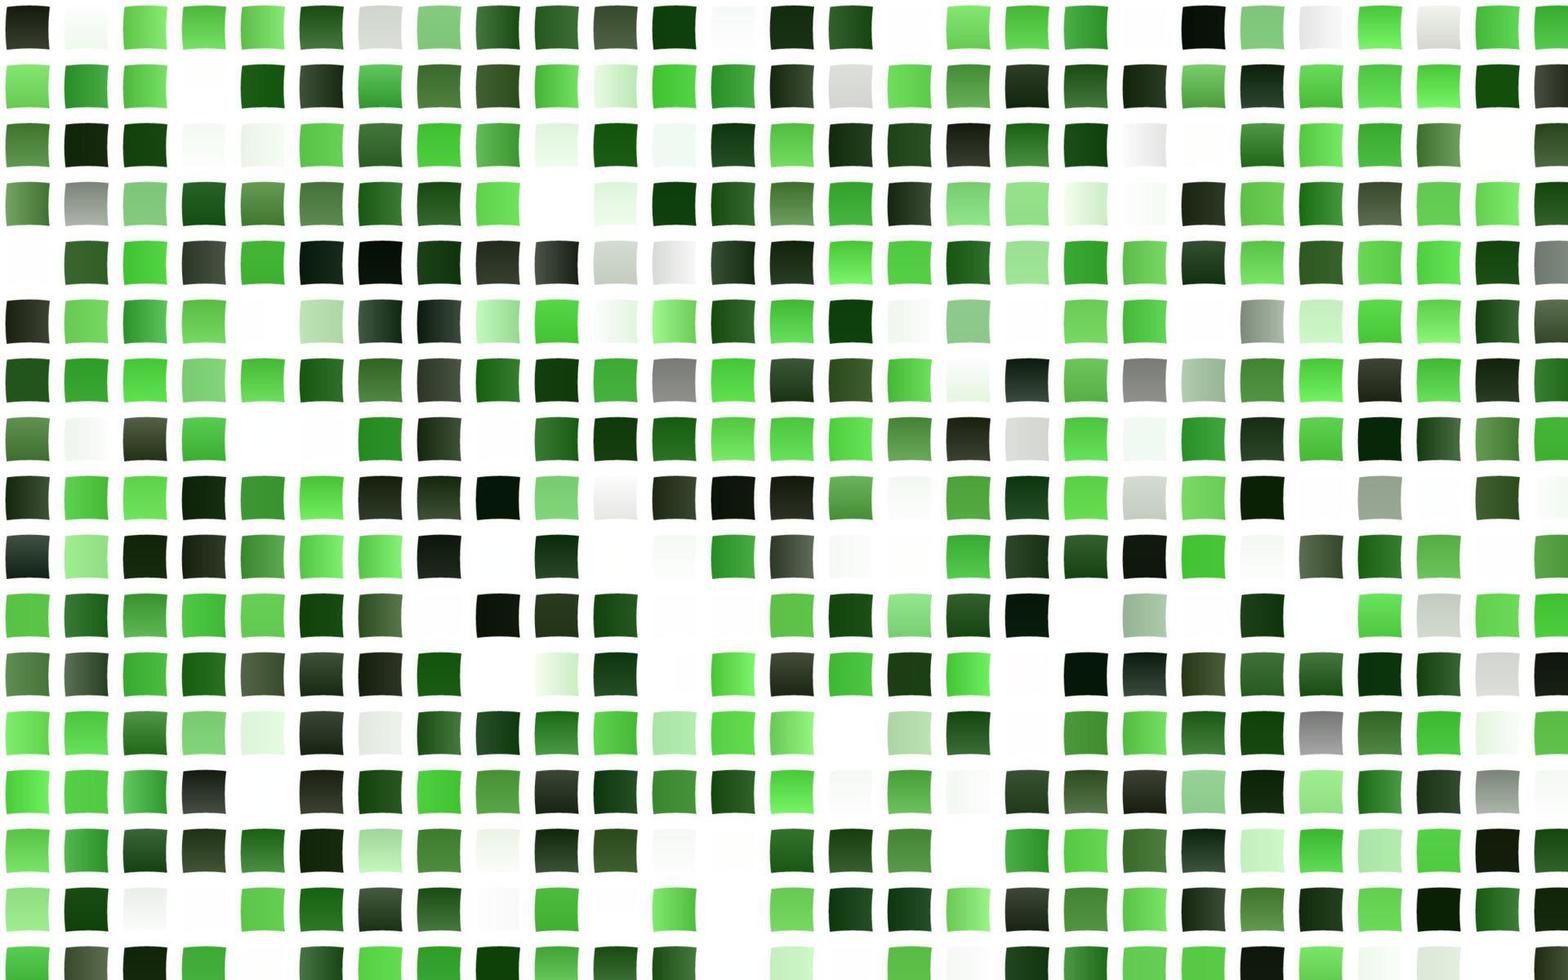 trama vettoriale verde chiaro in stile rettangolare.